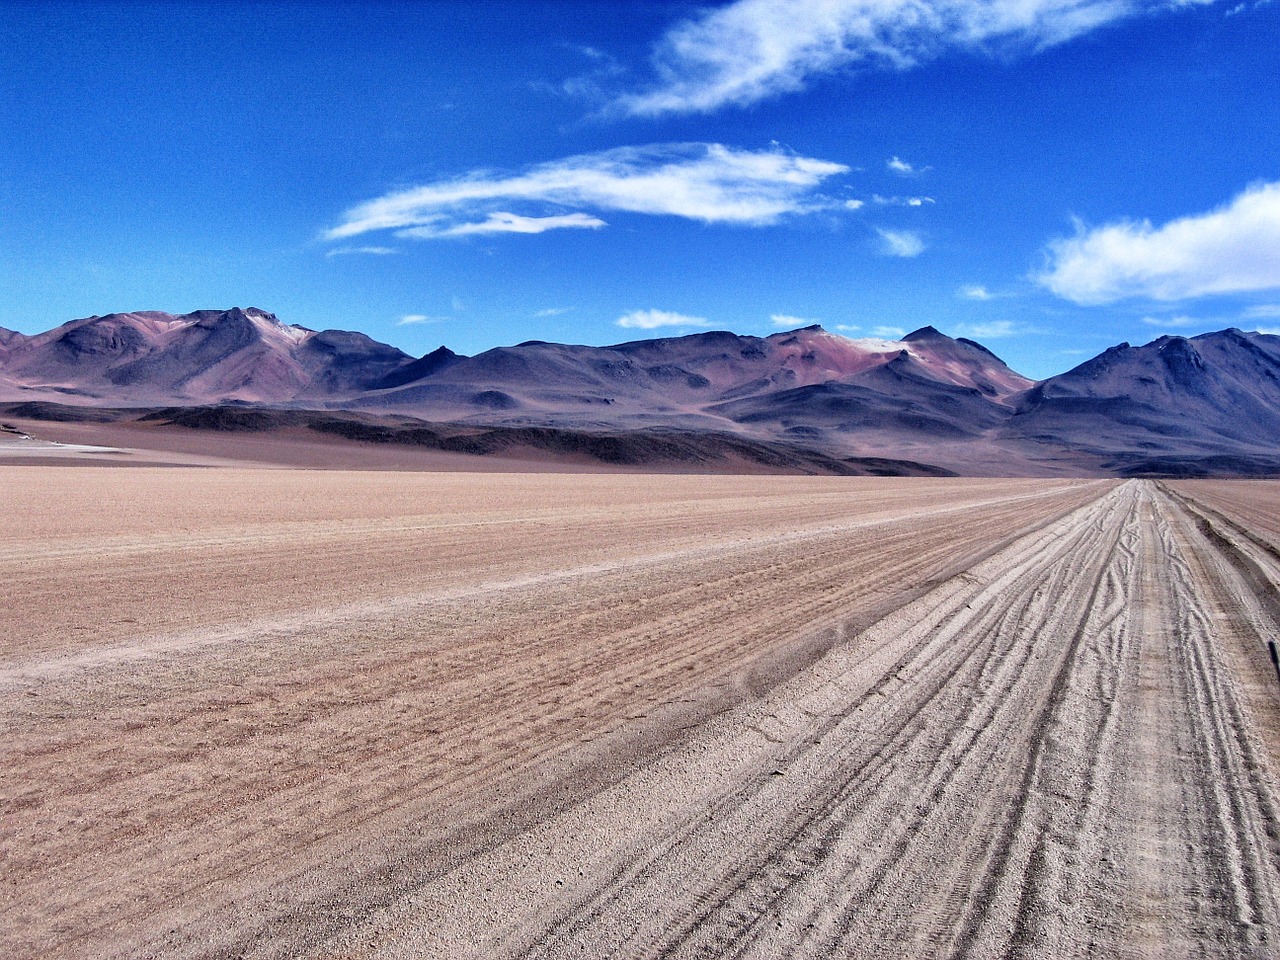 altiplano desert mountains free photo